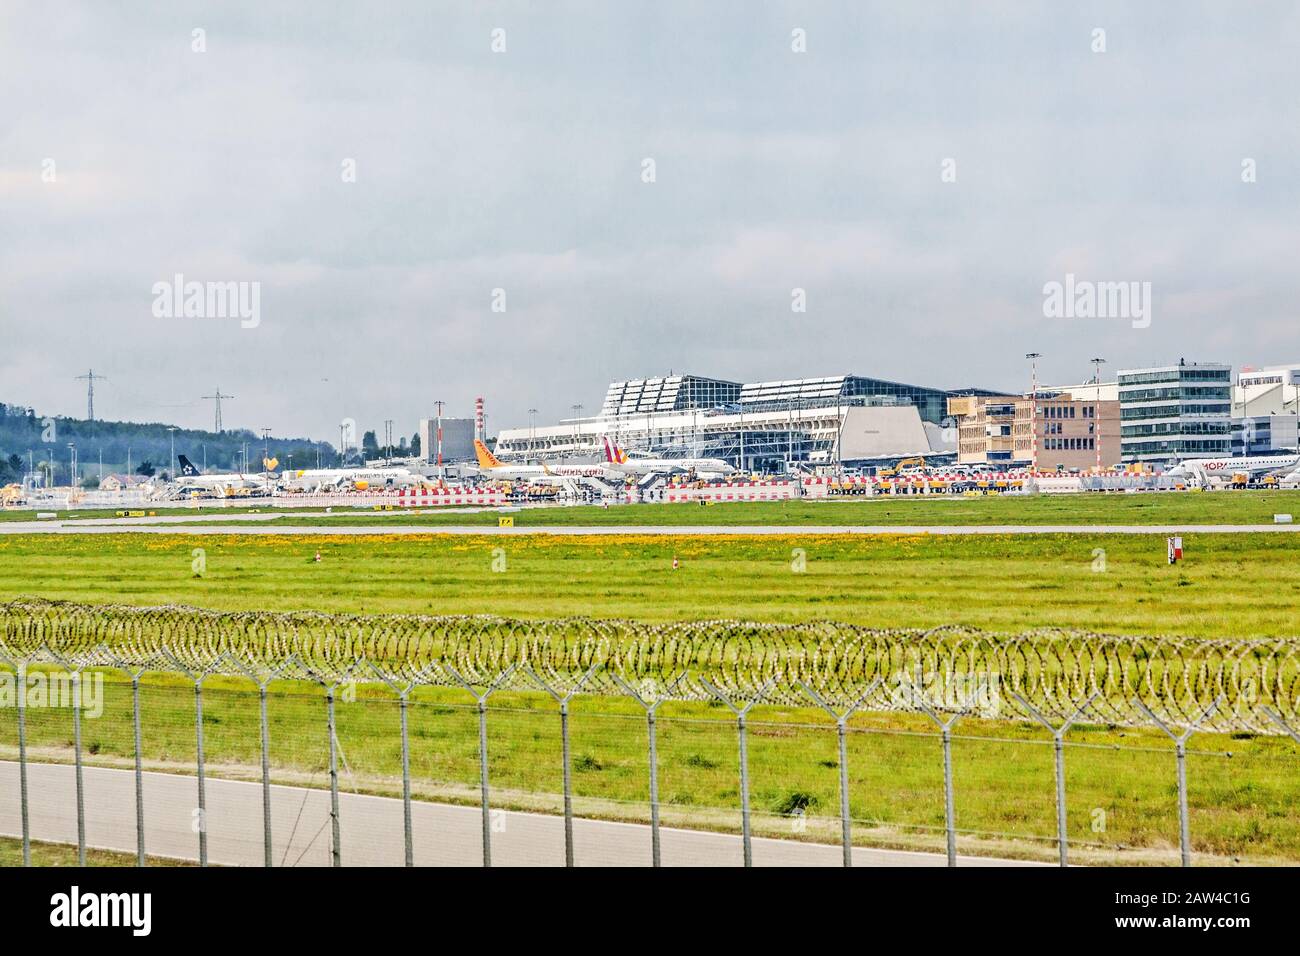 Stoccarda, Germania - 06 maggio 2017: Aeroporto di Stoccarda (Manfred-Rommel-Flughafen), terminal, vista esterna con aeroplani in posizione di parcheggio, pista in Foto Stock